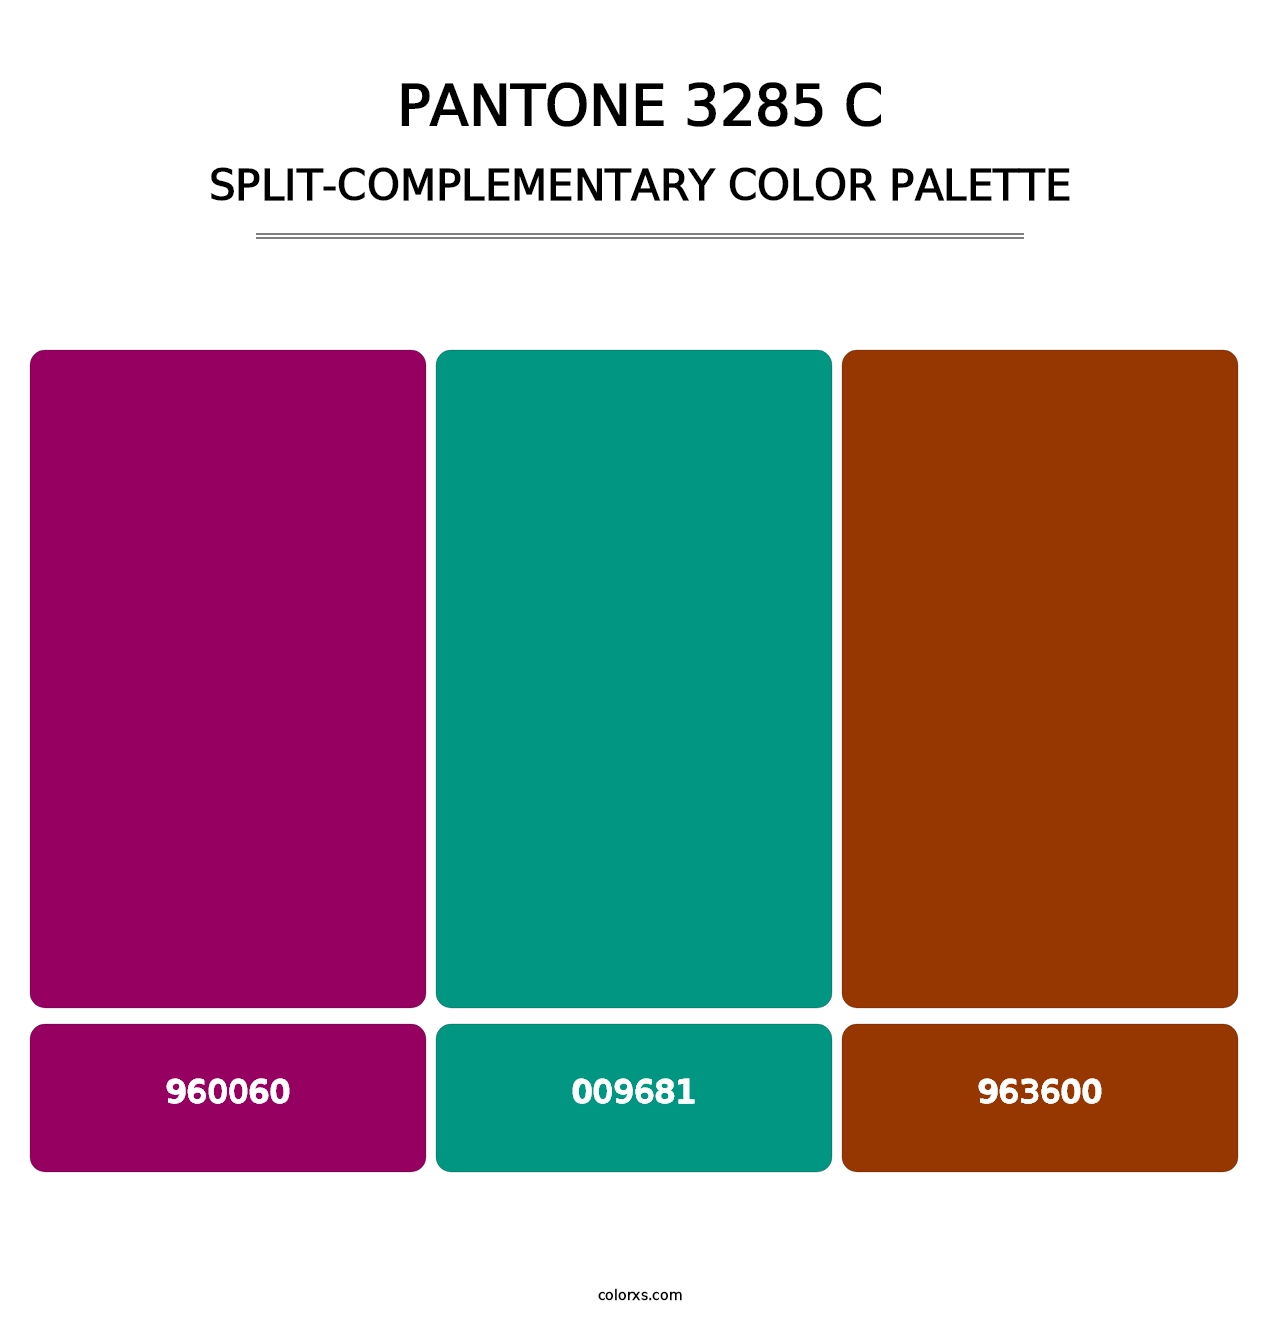 PANTONE 3285 C - Split-Complementary Color Palette